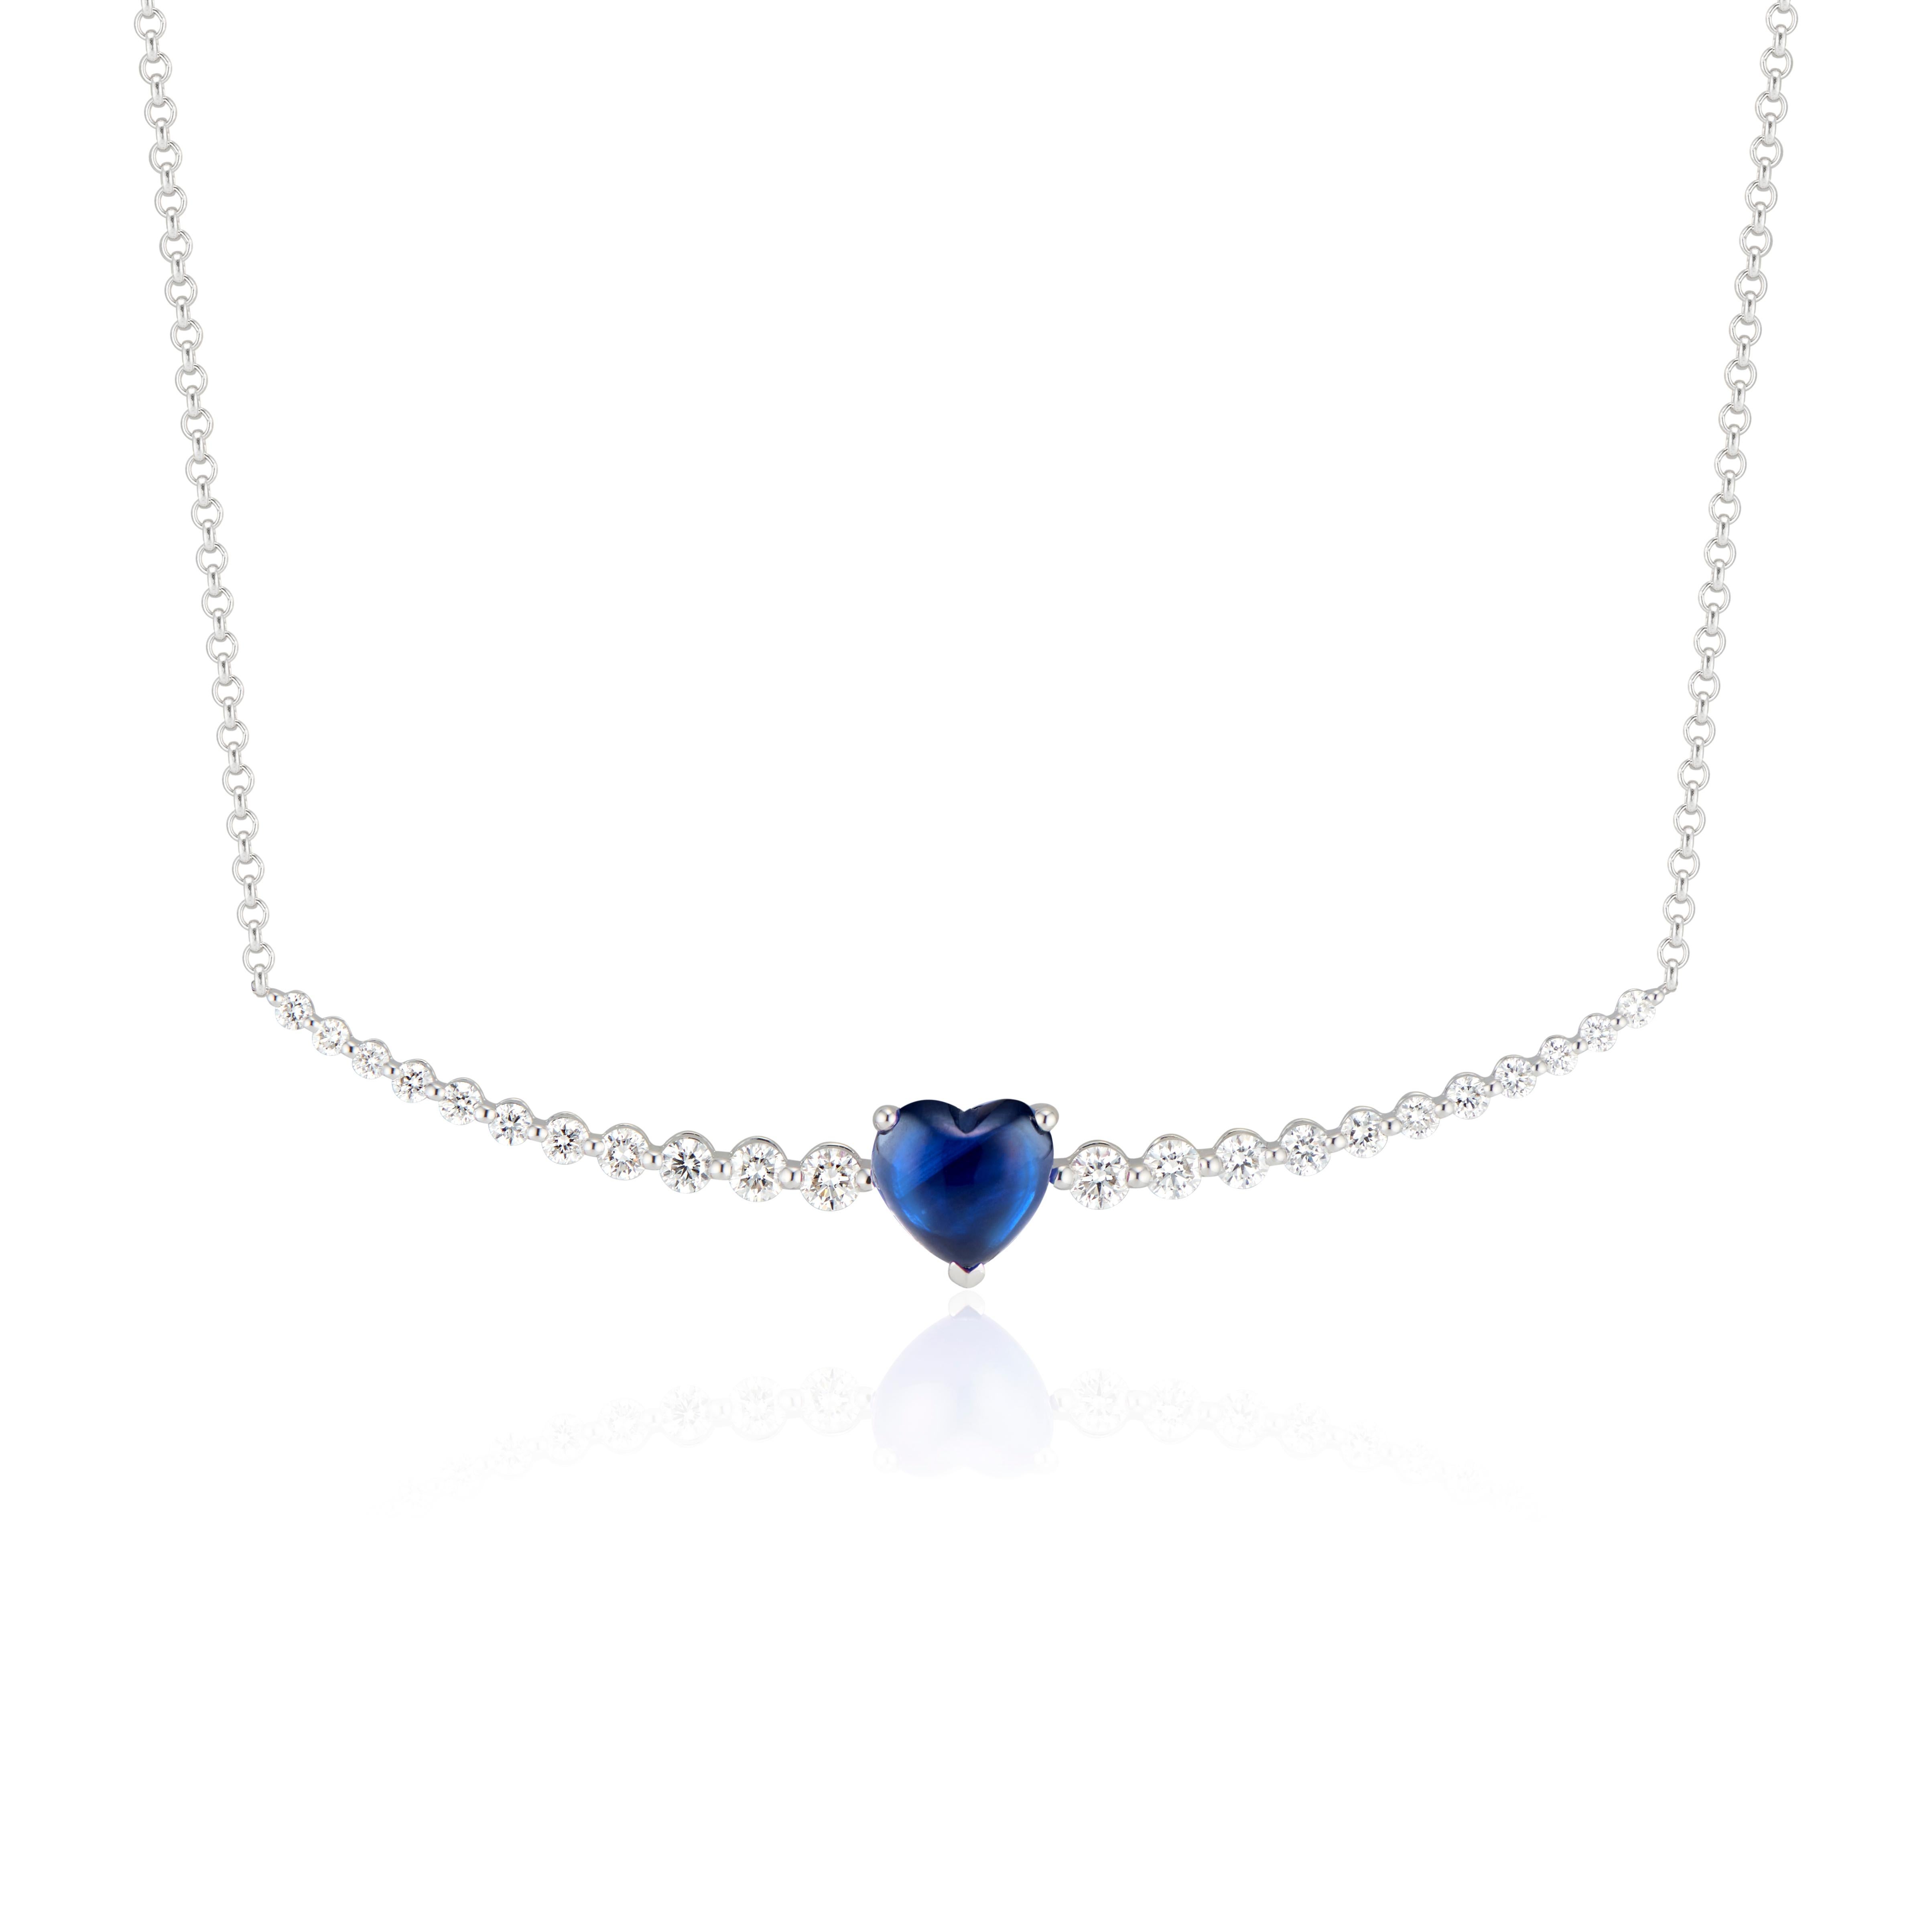 Schwebende Saphir-Herzen und Diamant-Ohrringe mit blauen Saphir-Cabochon-Herzen von 6,19 Karat und 0,33 ctw Diamanten